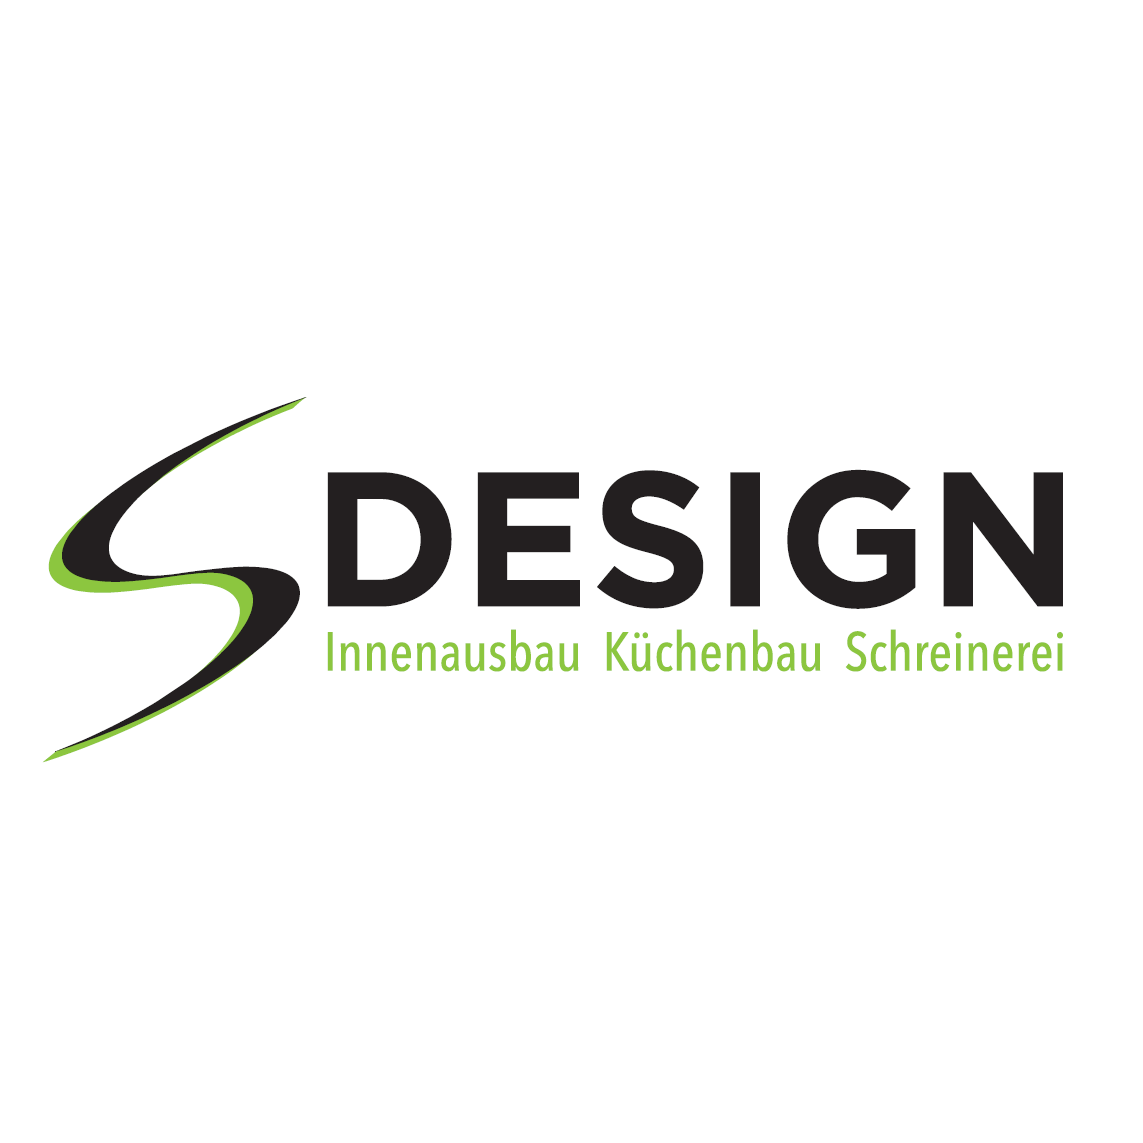 Schreinerei S-Design Logo